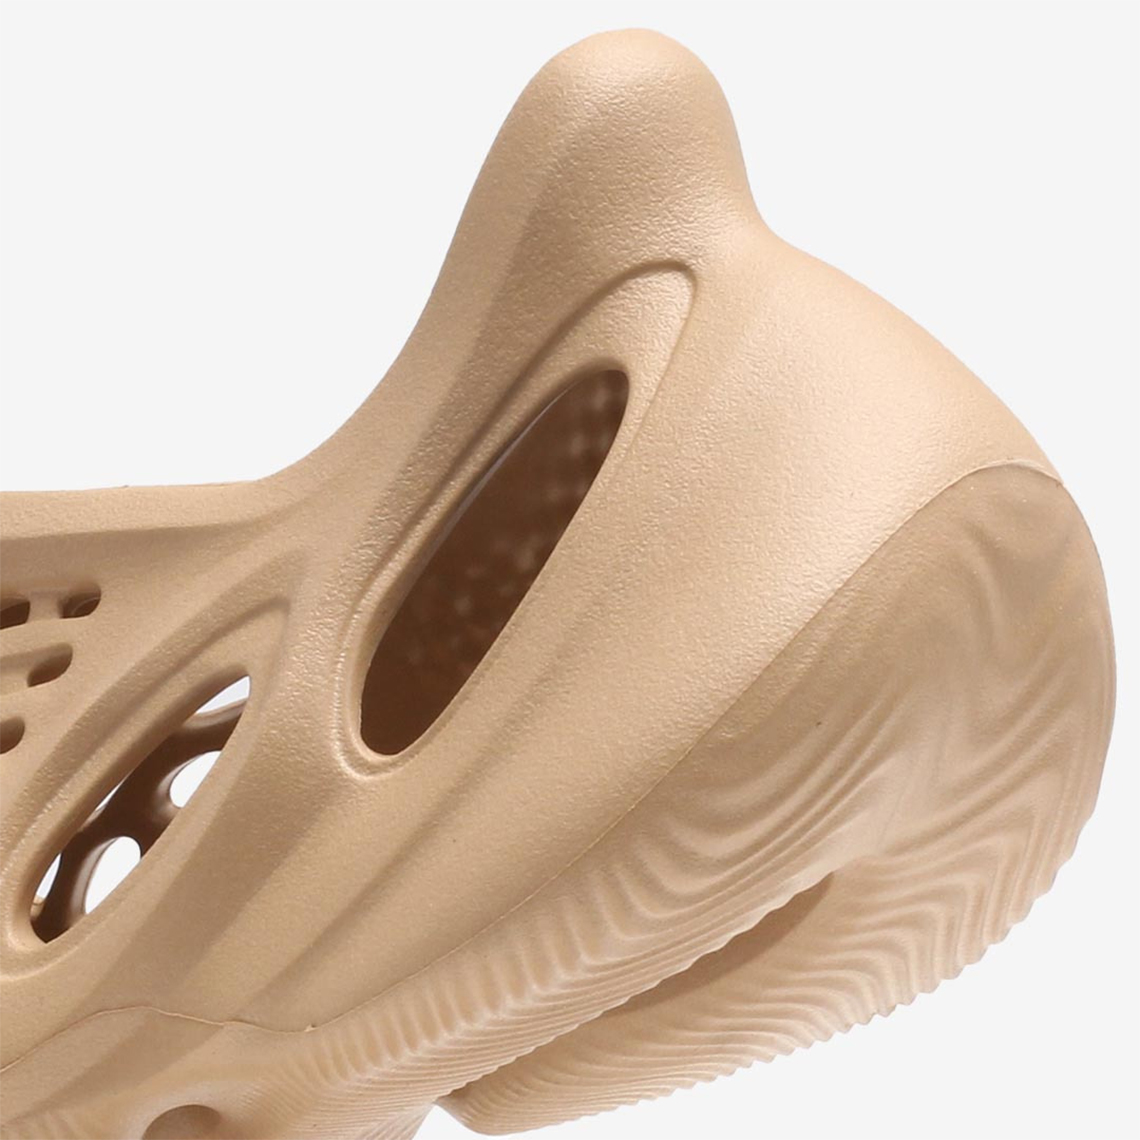 adidas YEEZY FOAM RUNNER Ochre GW3354 | SneakerNews.com